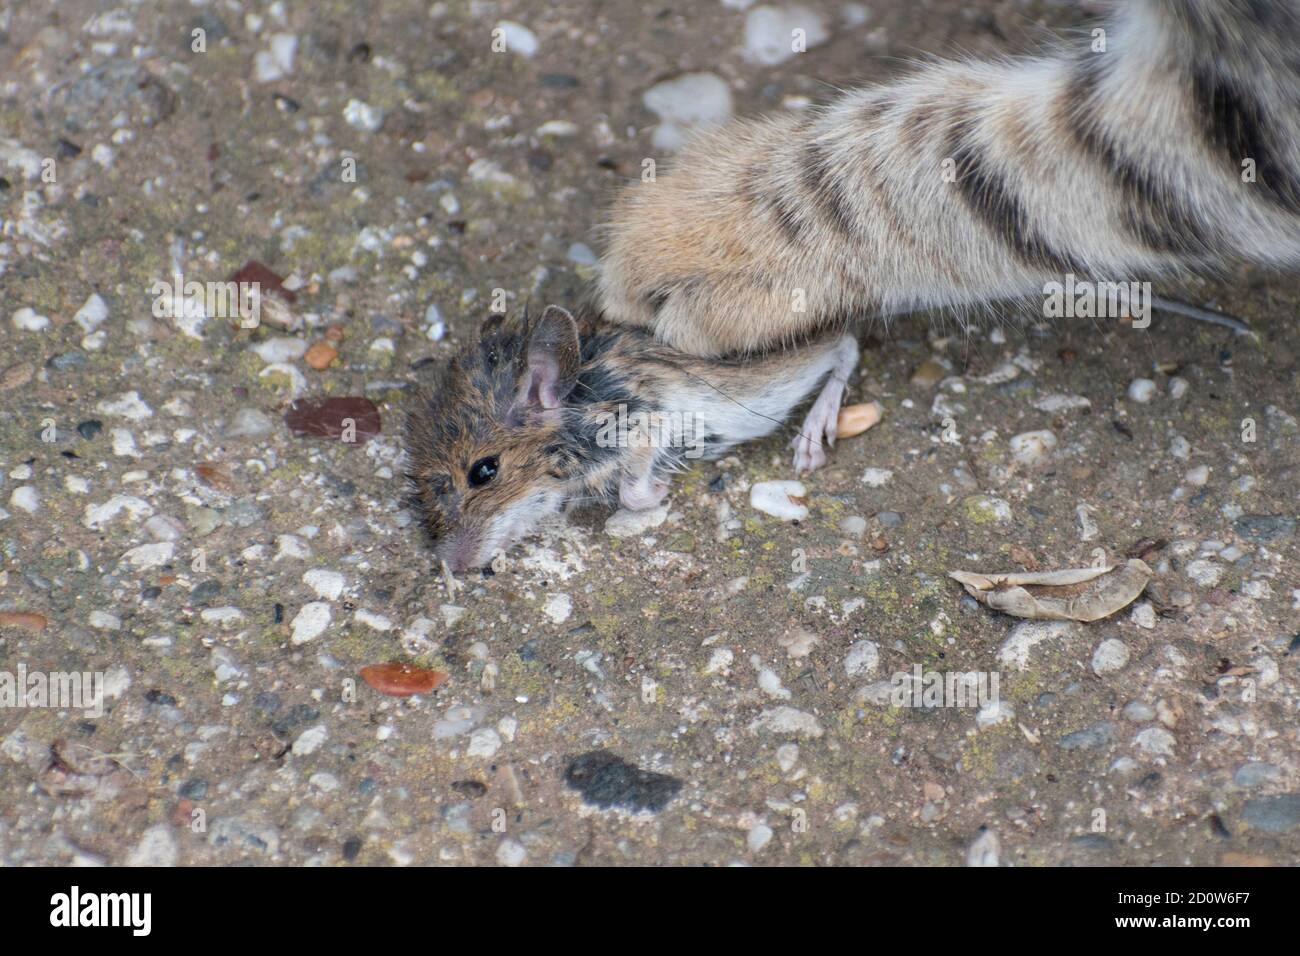 Gattino, cacce e prende il mouse. Catena alimentare animale, Felis catus Foto Stock